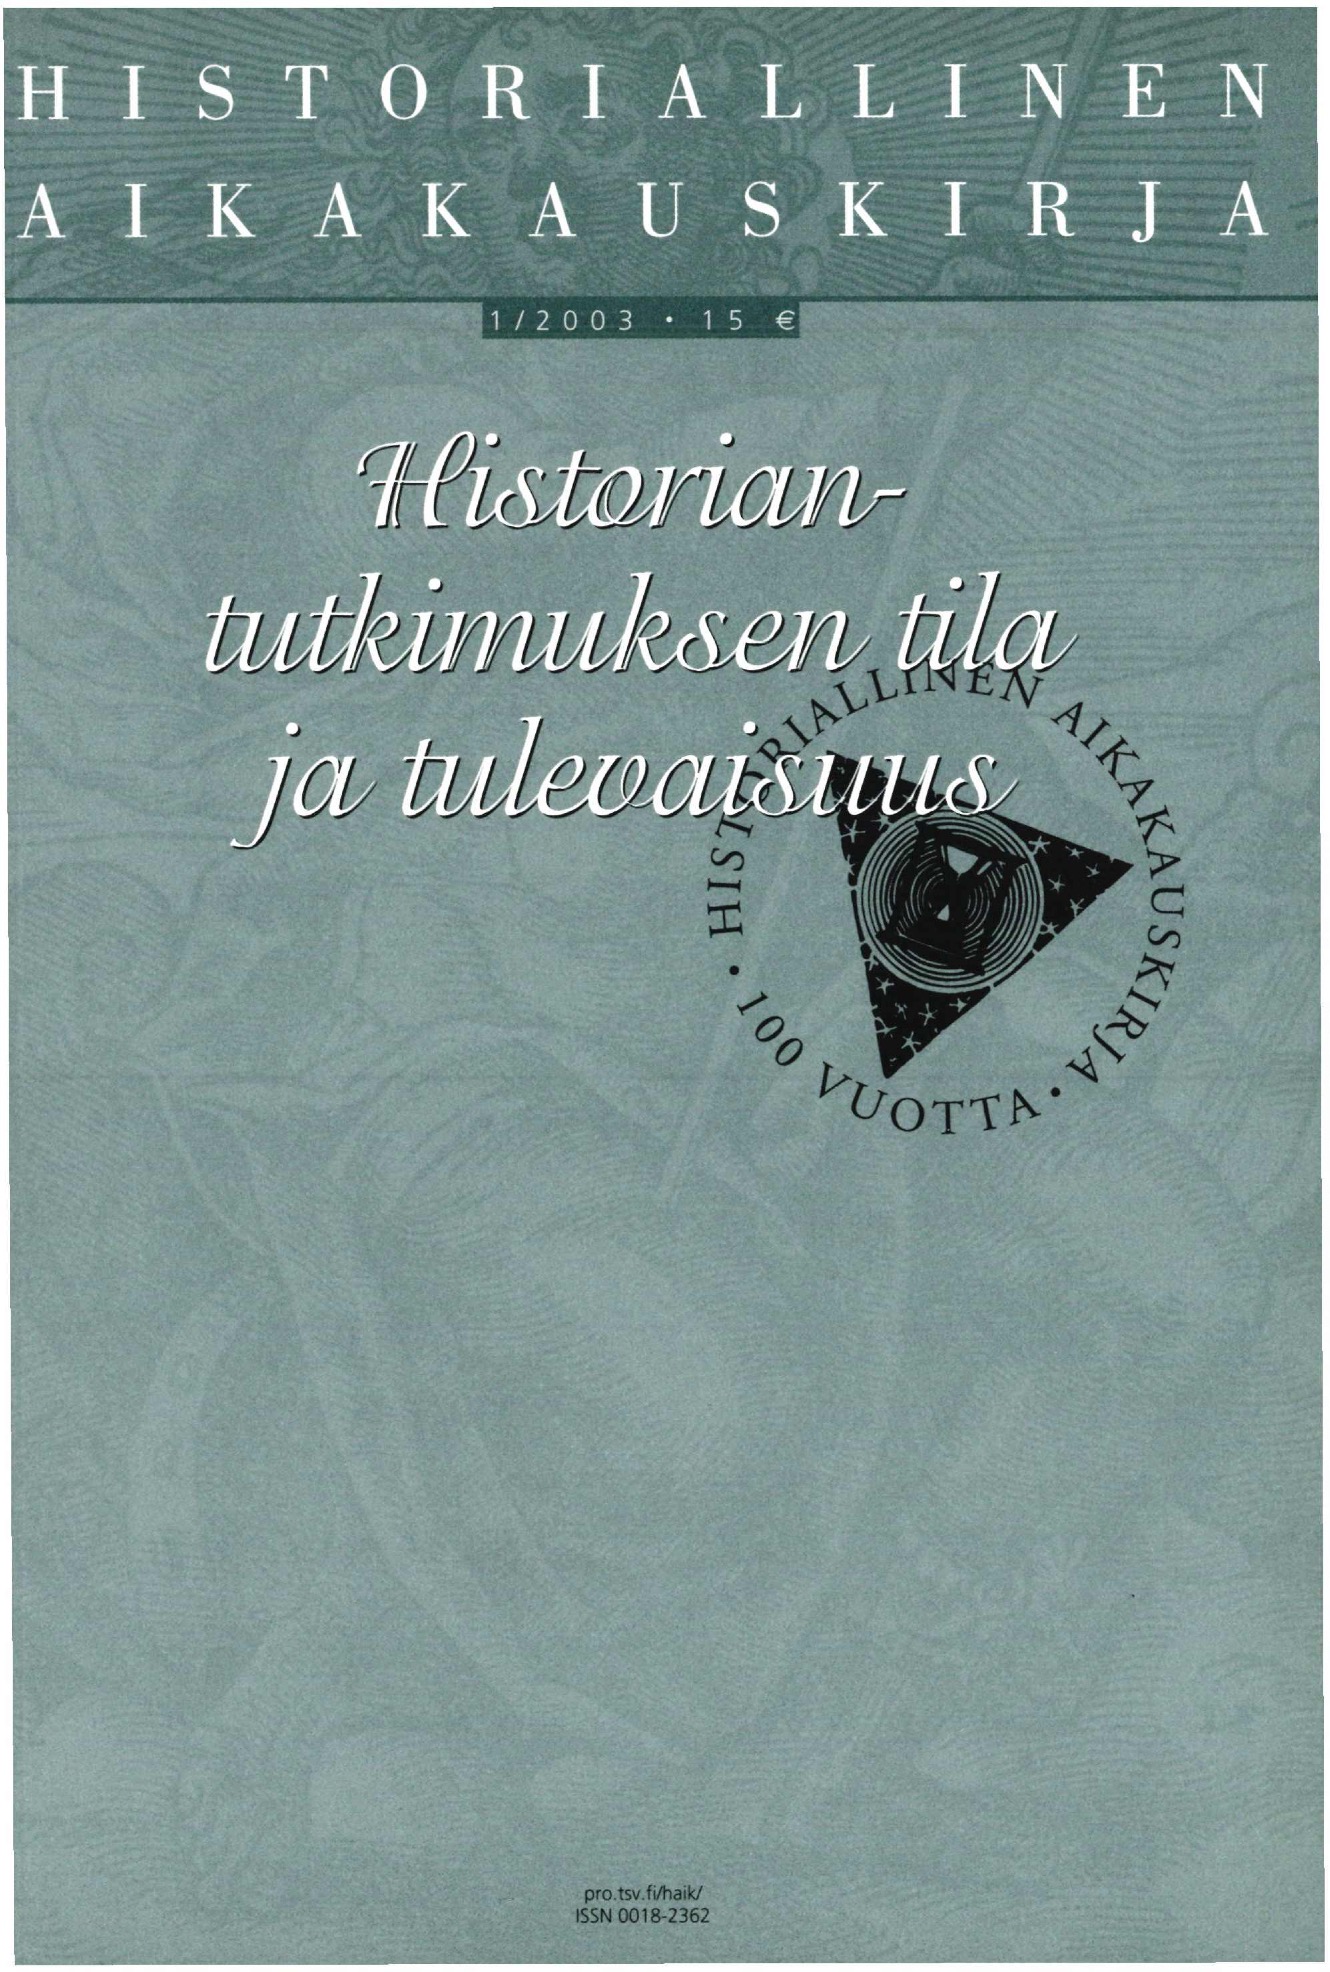 					Näytä Vol 101 Nro 1 (2003): Historiallinen Aikakauskirja 1/2003 Historiantutkimuksen tila ja tulevaisuus
				